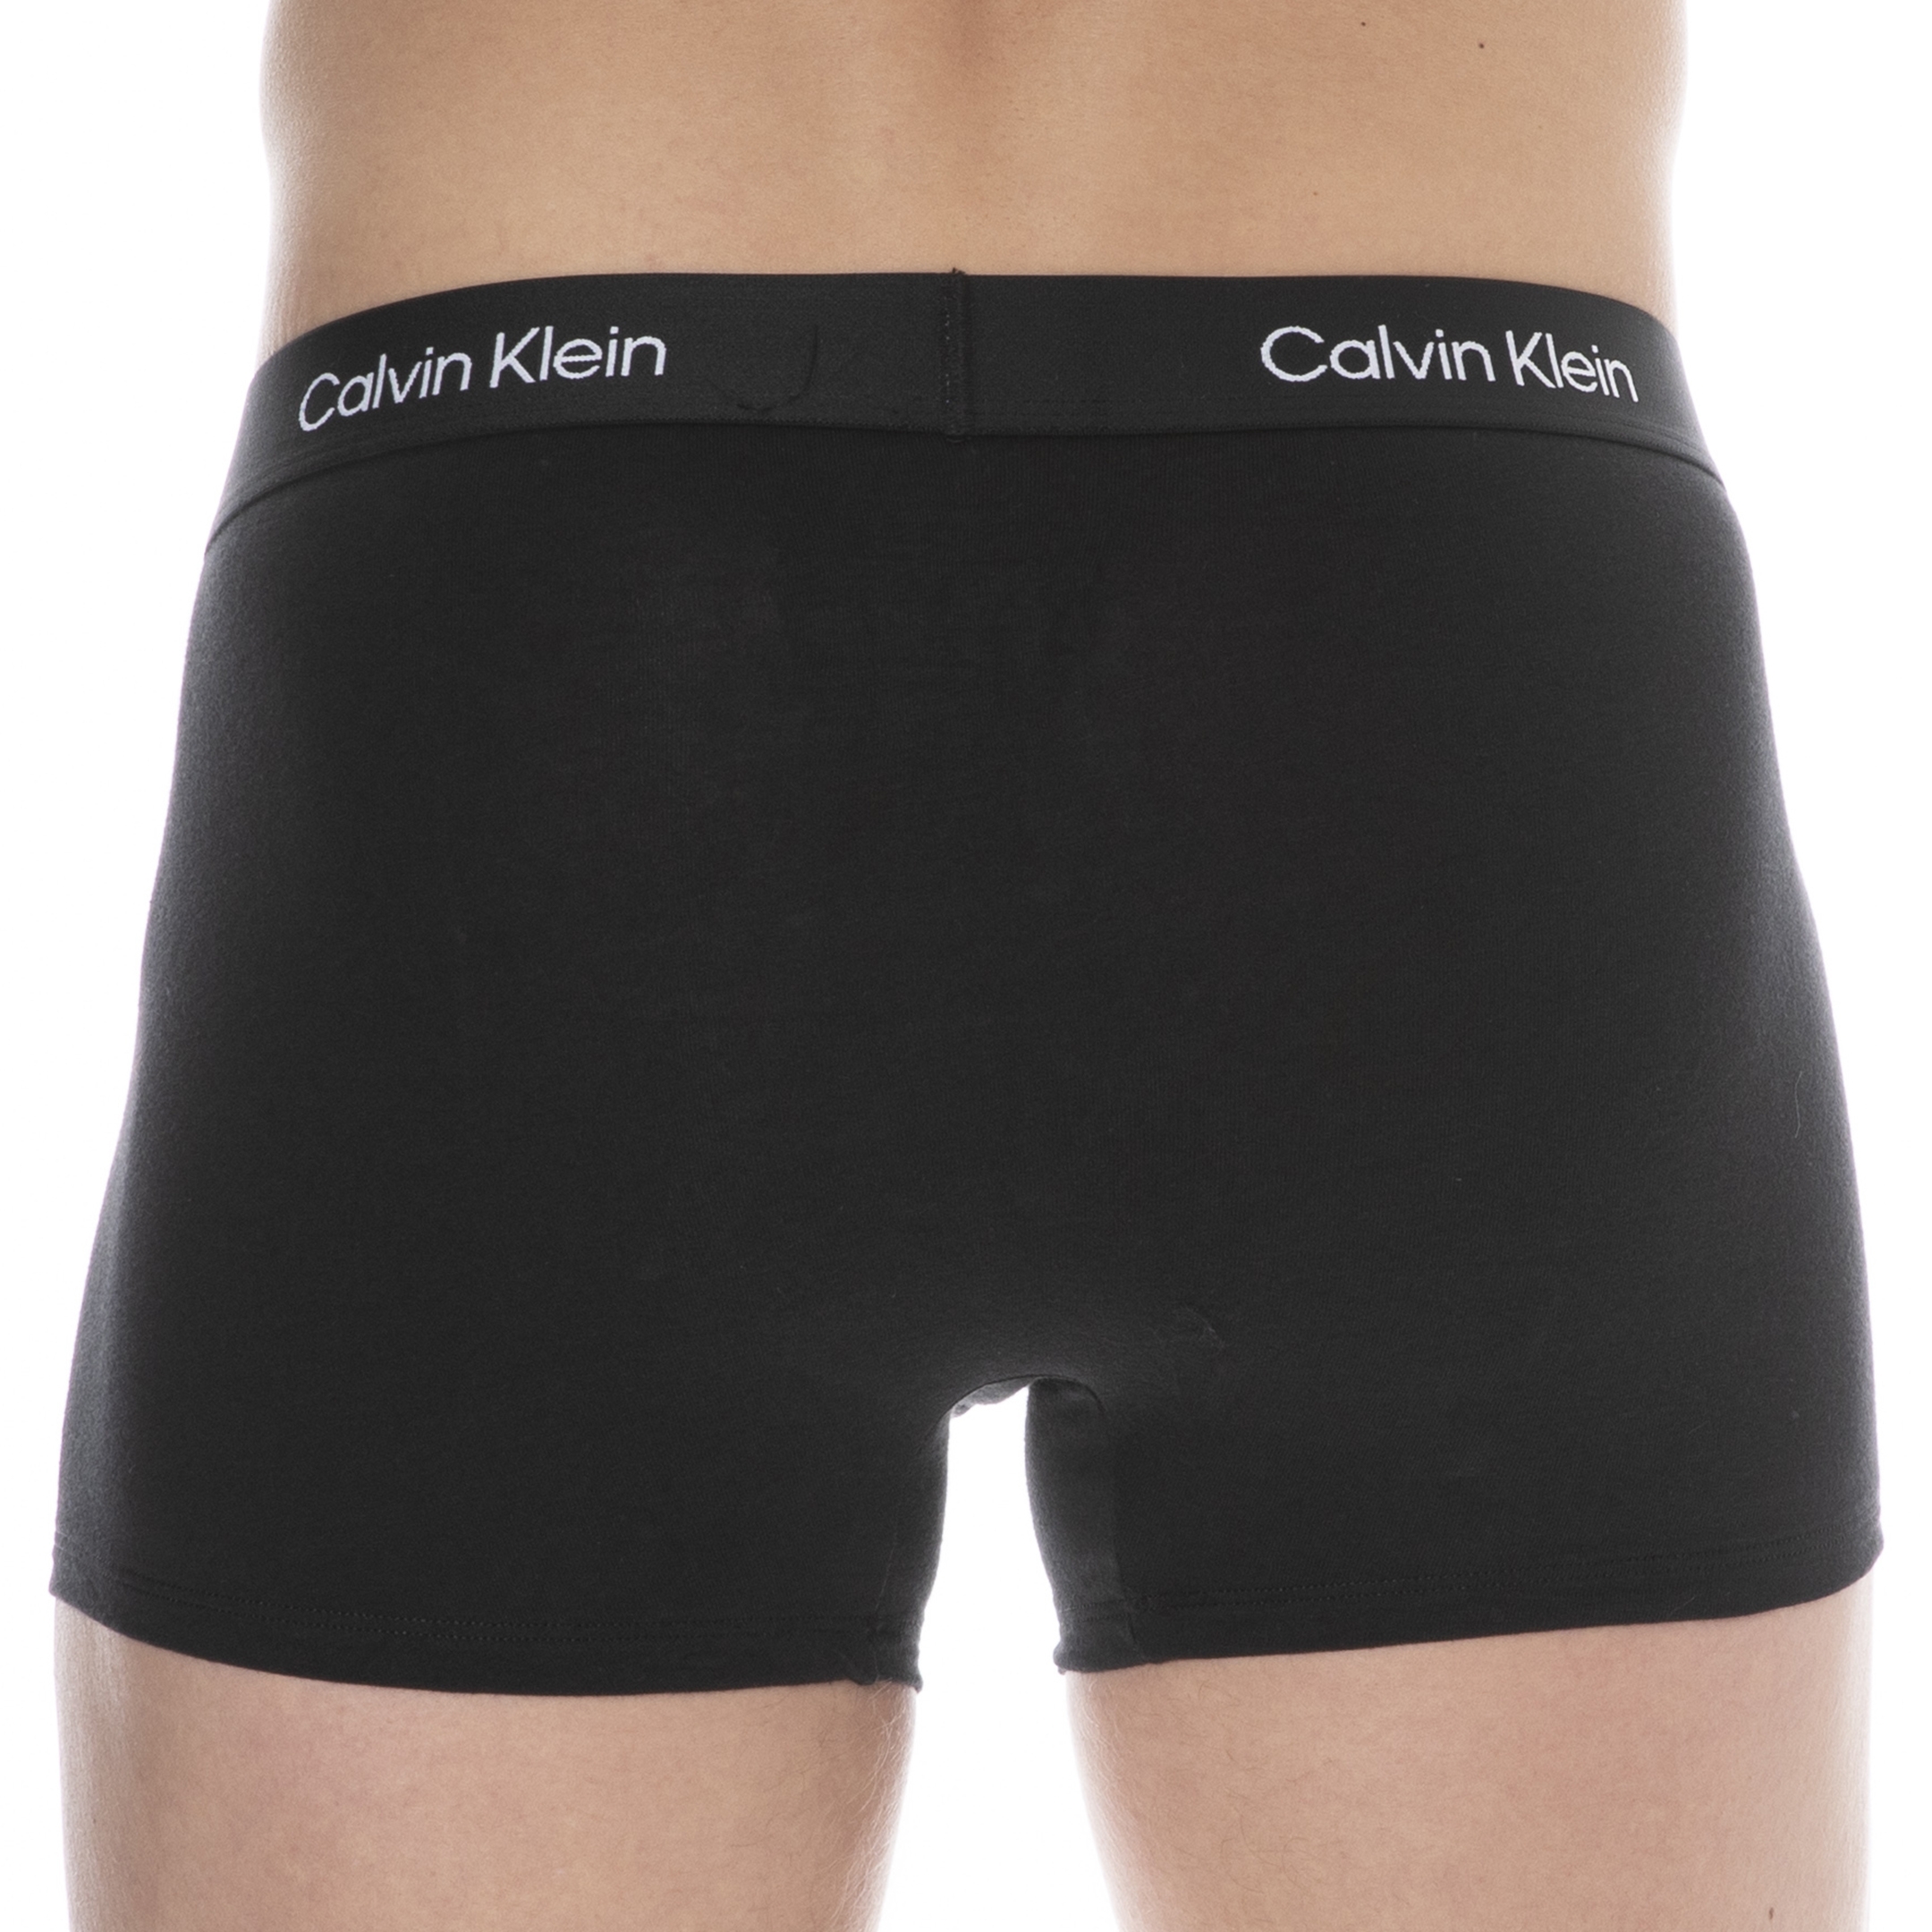 Calvin Klein Ck96 Boxer Briefs - Black | INDERWEAR